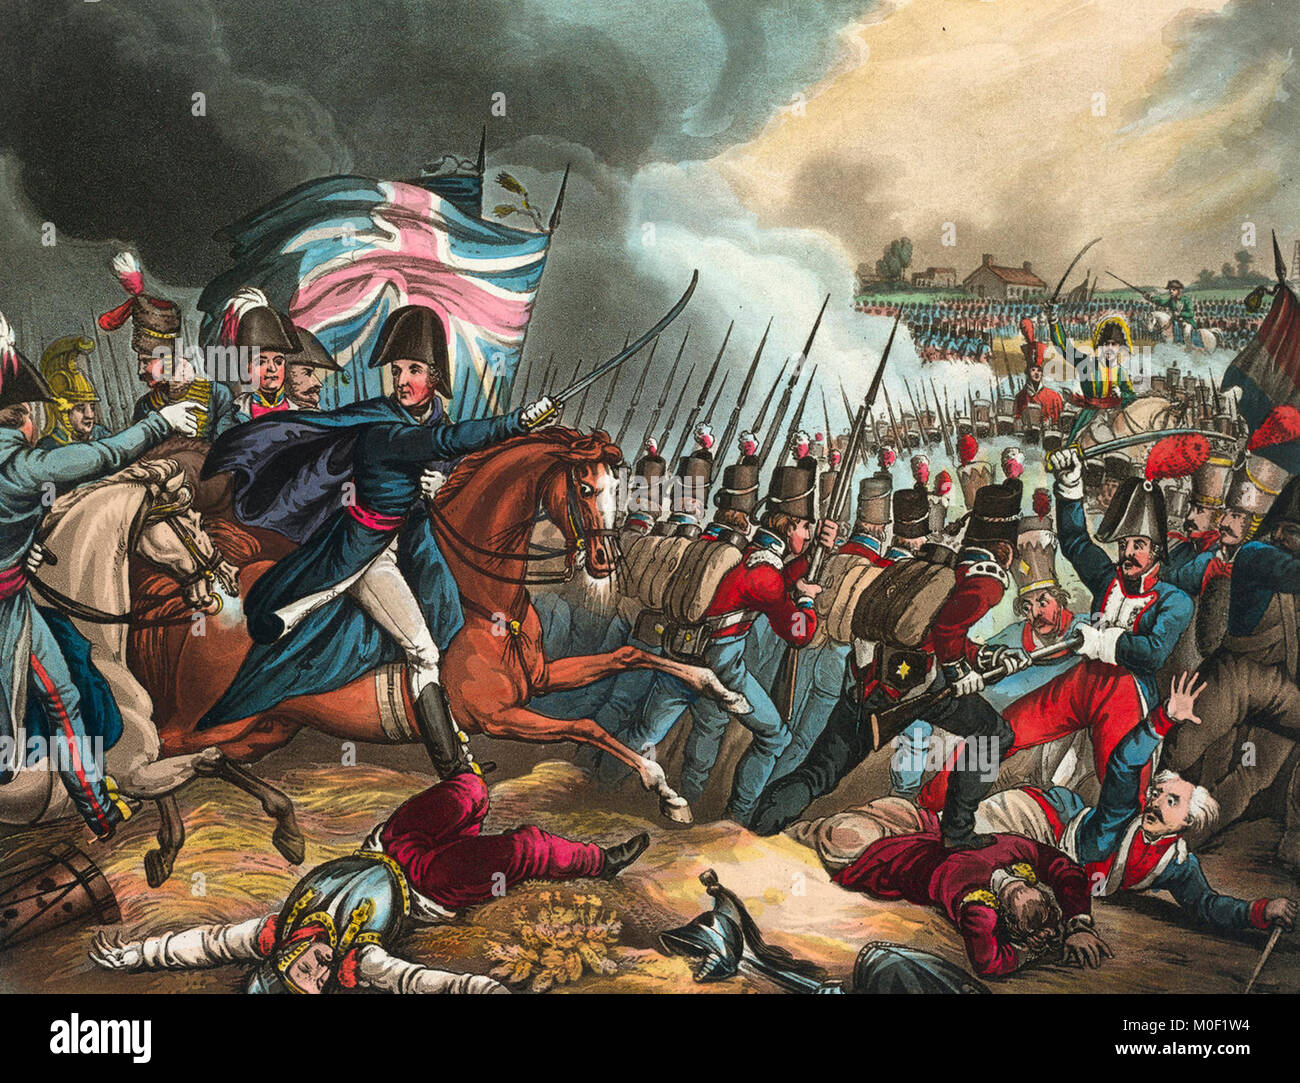 Die Schlacht von Waterloo, 18. Juni 1815 von Arthur Wellesley, der Herzog von Wellington. Die Niederlage der französischen Truppen von Napoleon Bonaparte. Die letzte große Schlacht der napoleonischen Kriege. Stockfoto